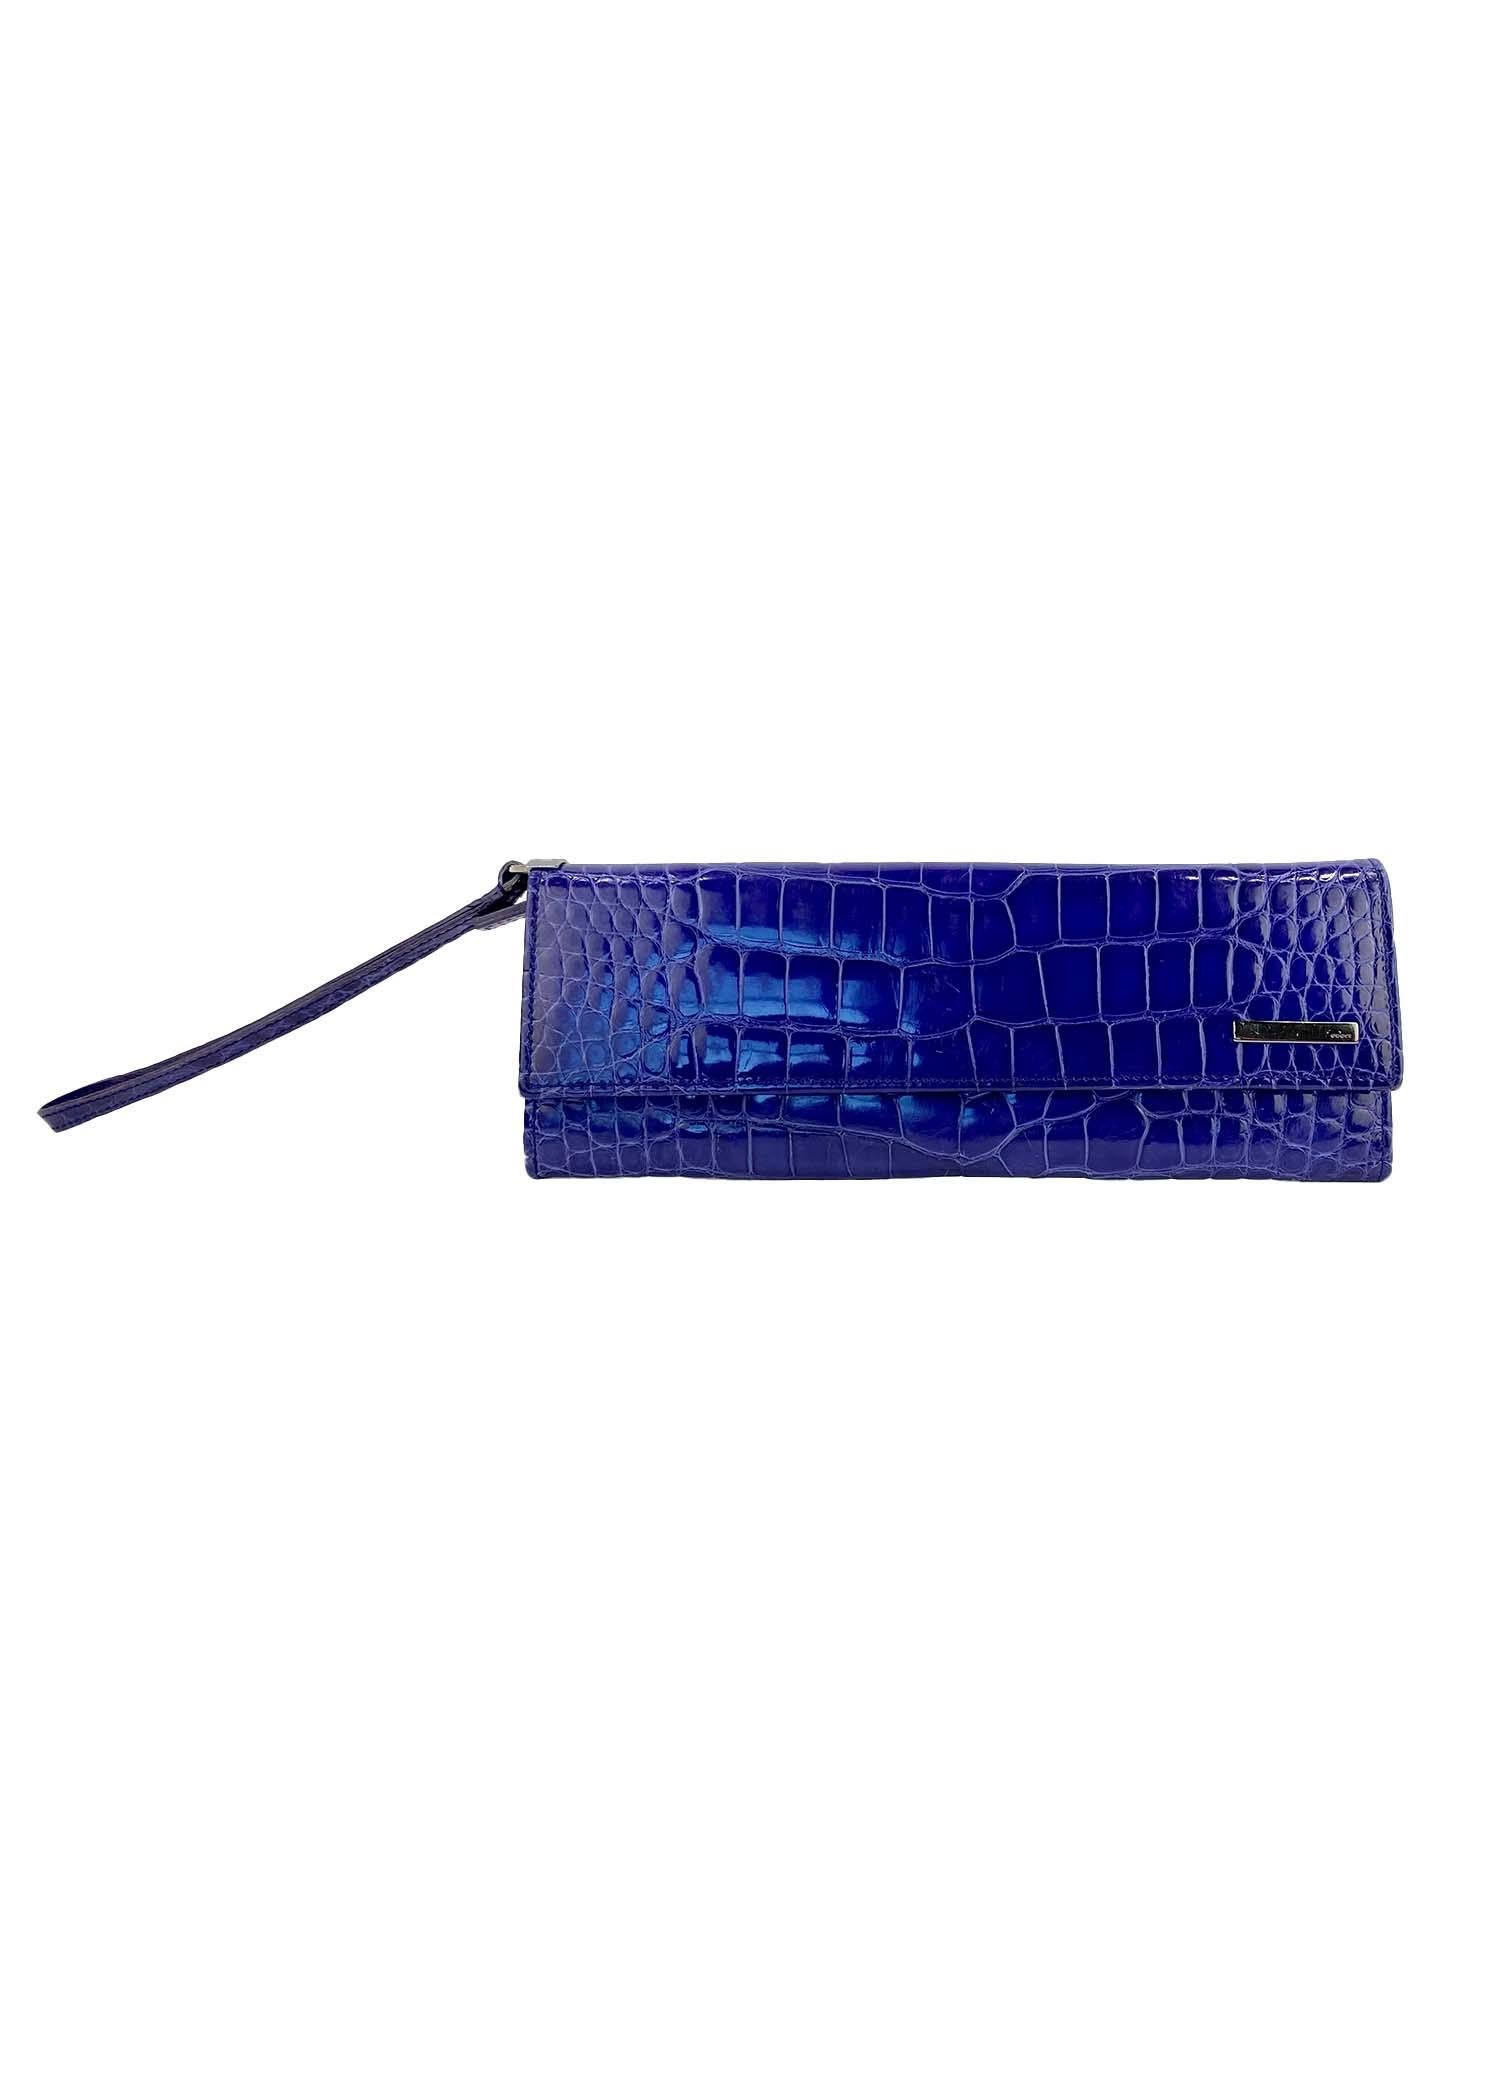 S/S 2001 Gucci for Tom Ford Lila Alligator Handgelenkstasche Reißverschluss Brieftasche Clutch (Violett) im Angebot